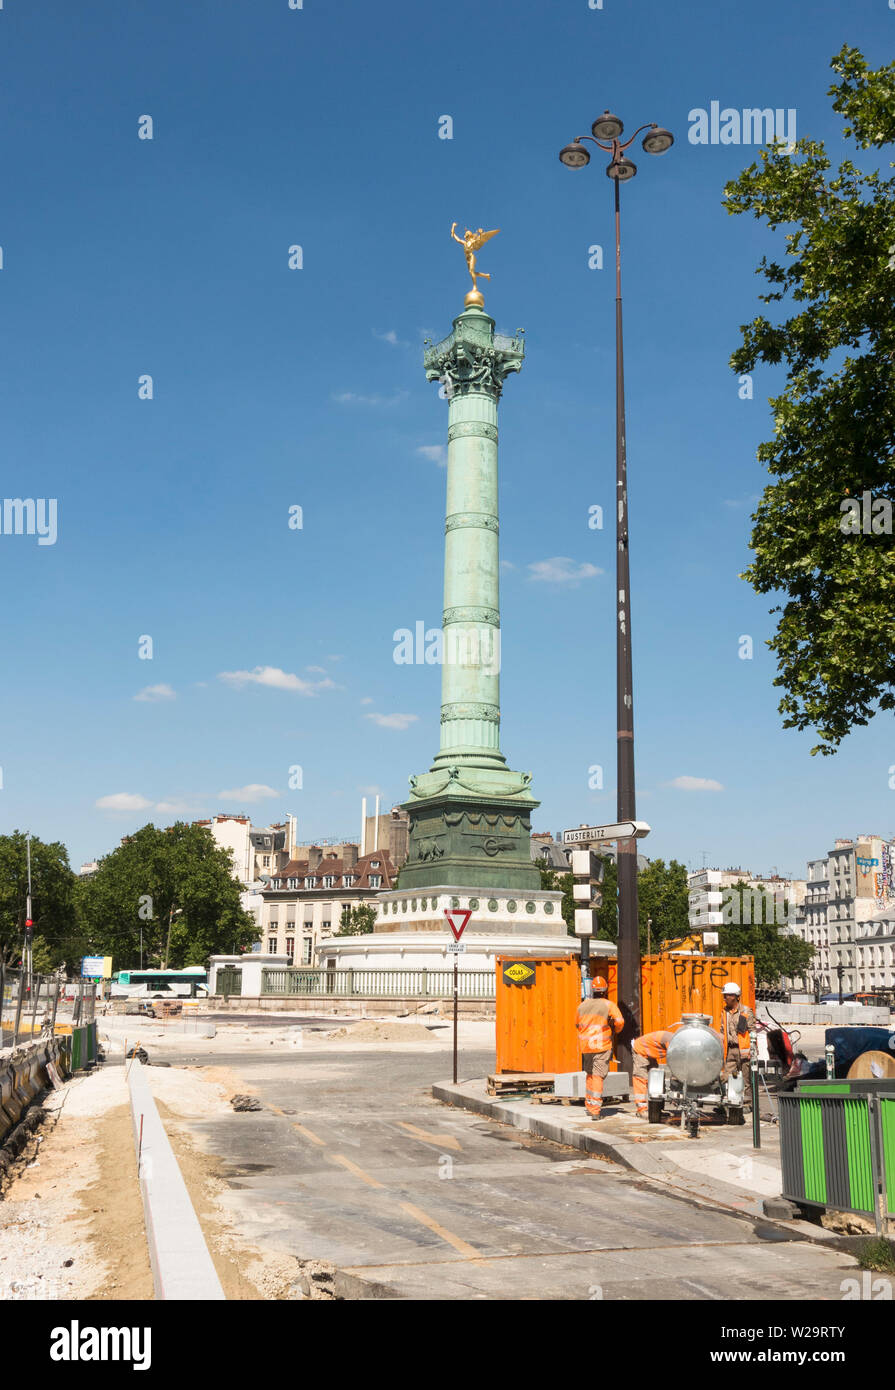 The Place de la Bastille with July Column undergoing construction work making it pedestrian friendly, Bastille, Paris, France. Stock Photo